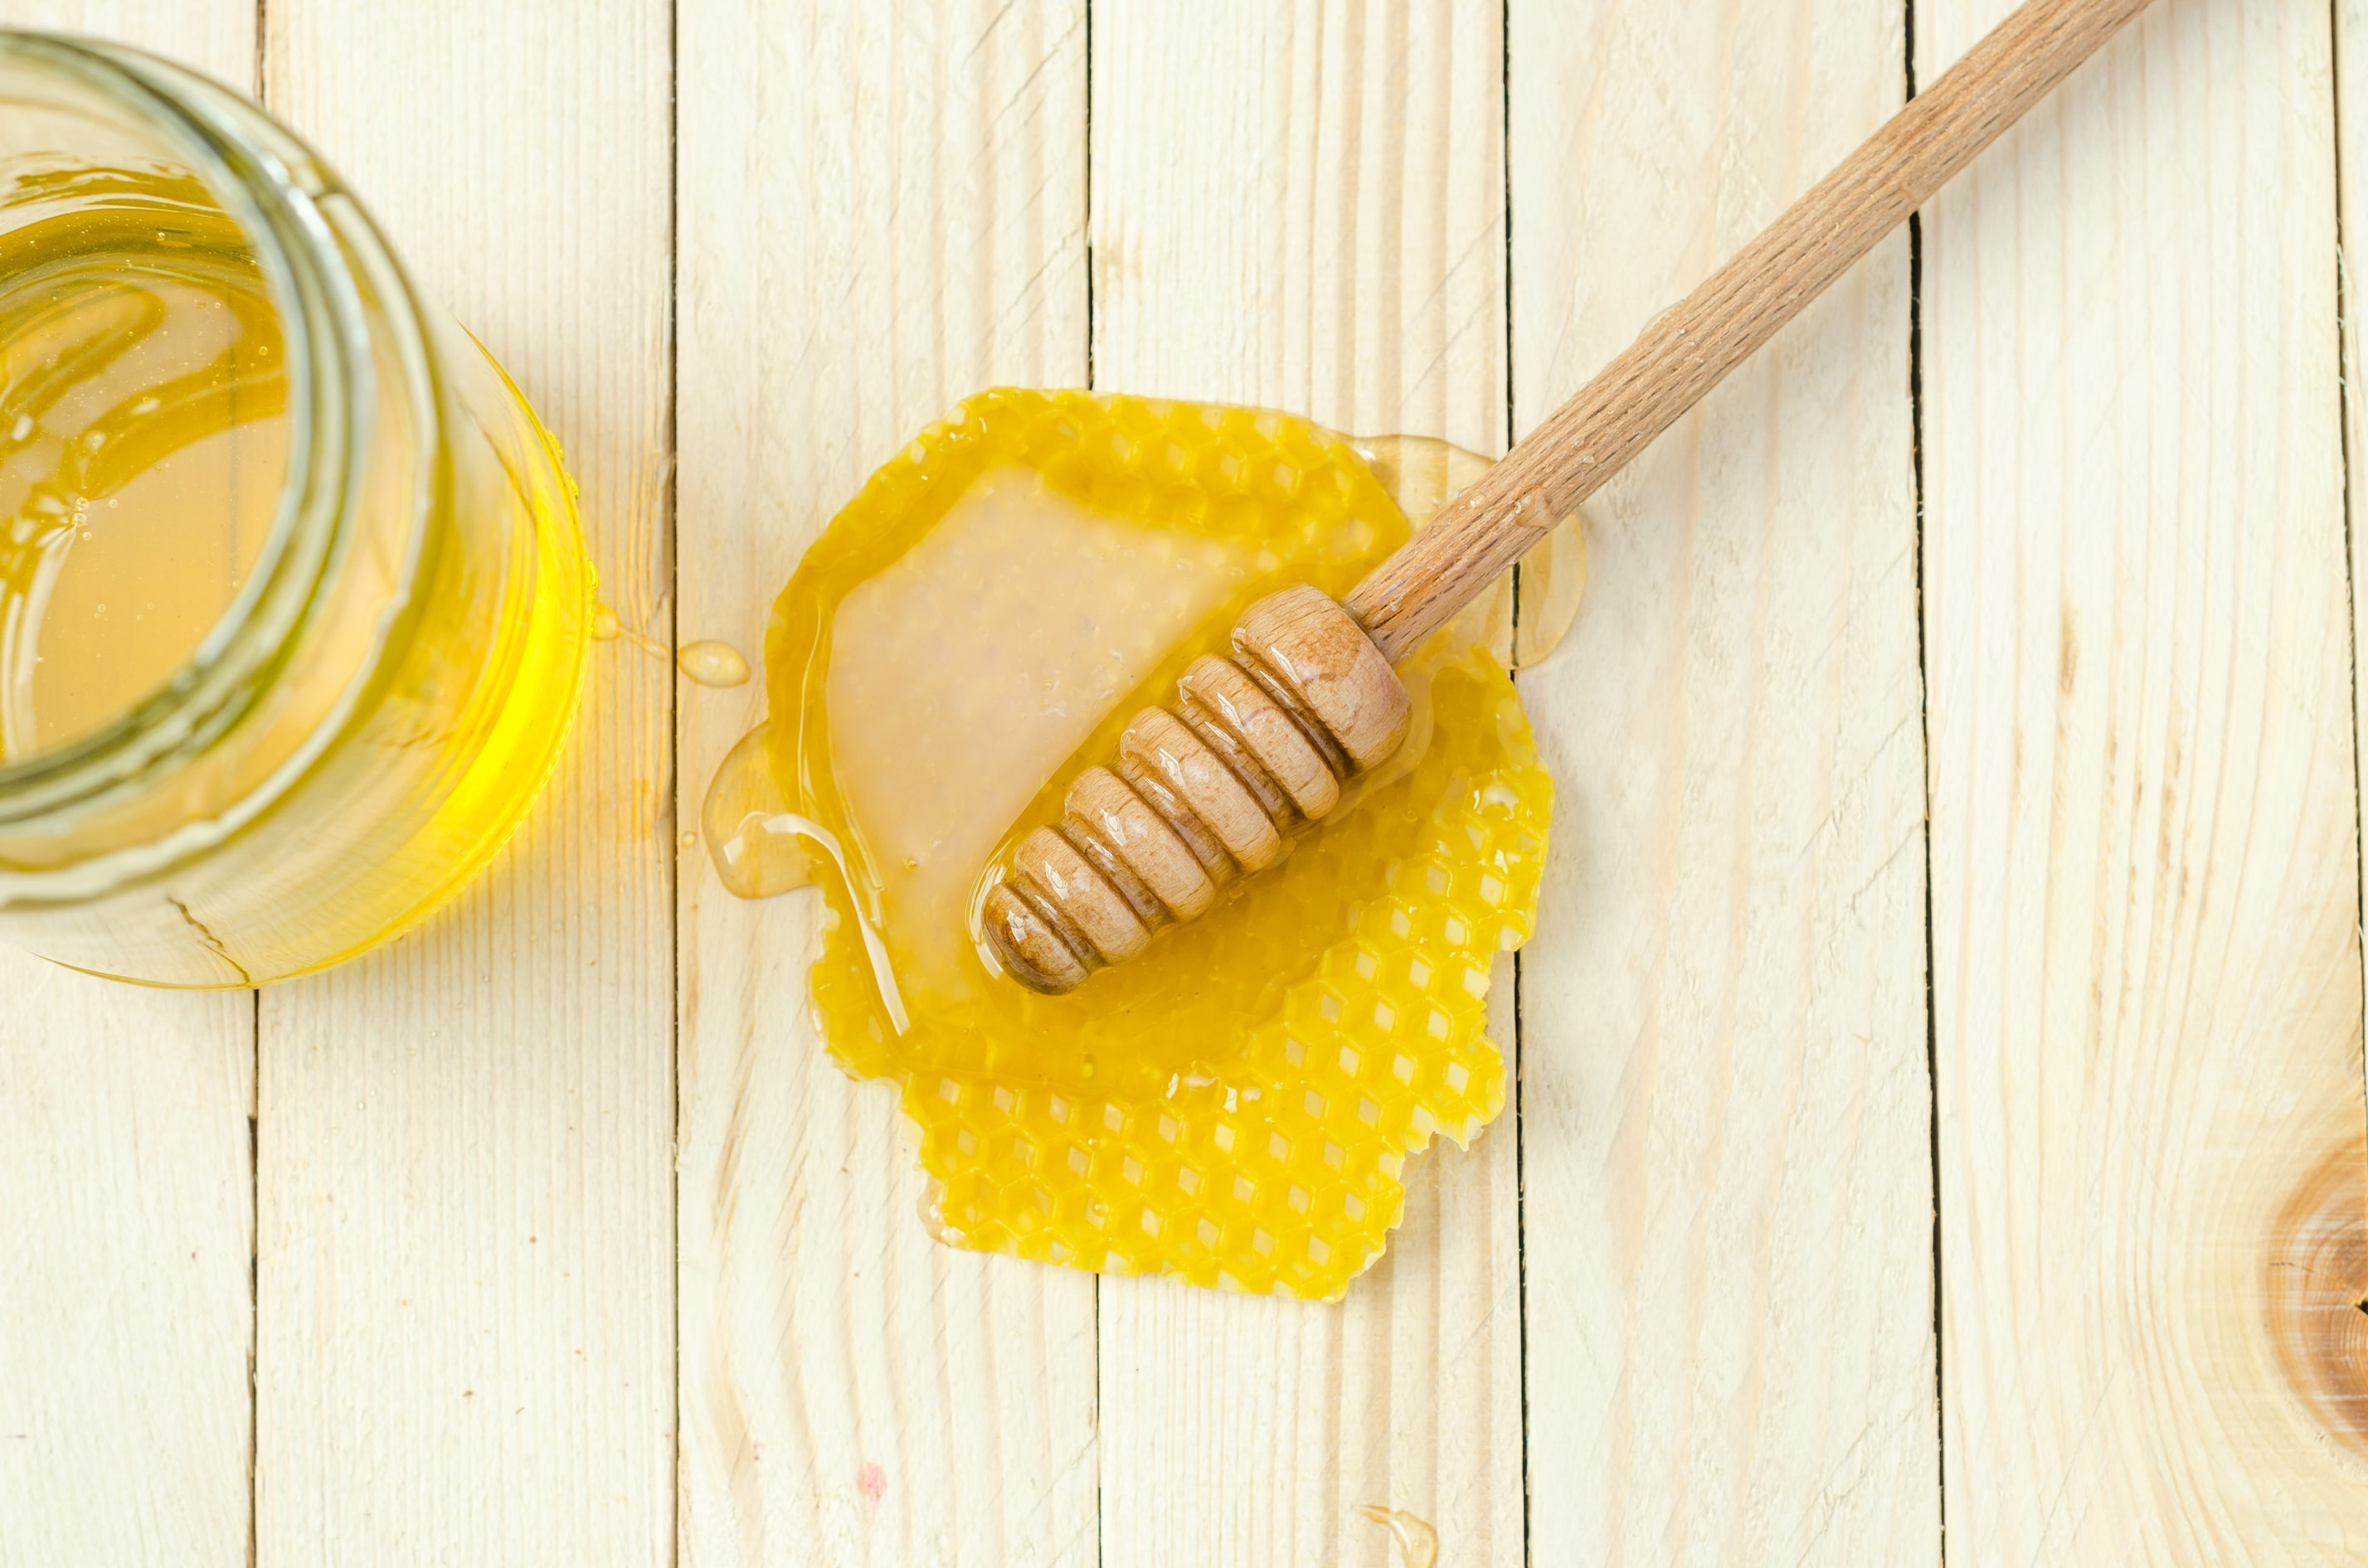 Honey медовый. Мёд натуральный. Соты меда. Мед на столе вид сверху. Мед с ложечкой для меда вид сверху.